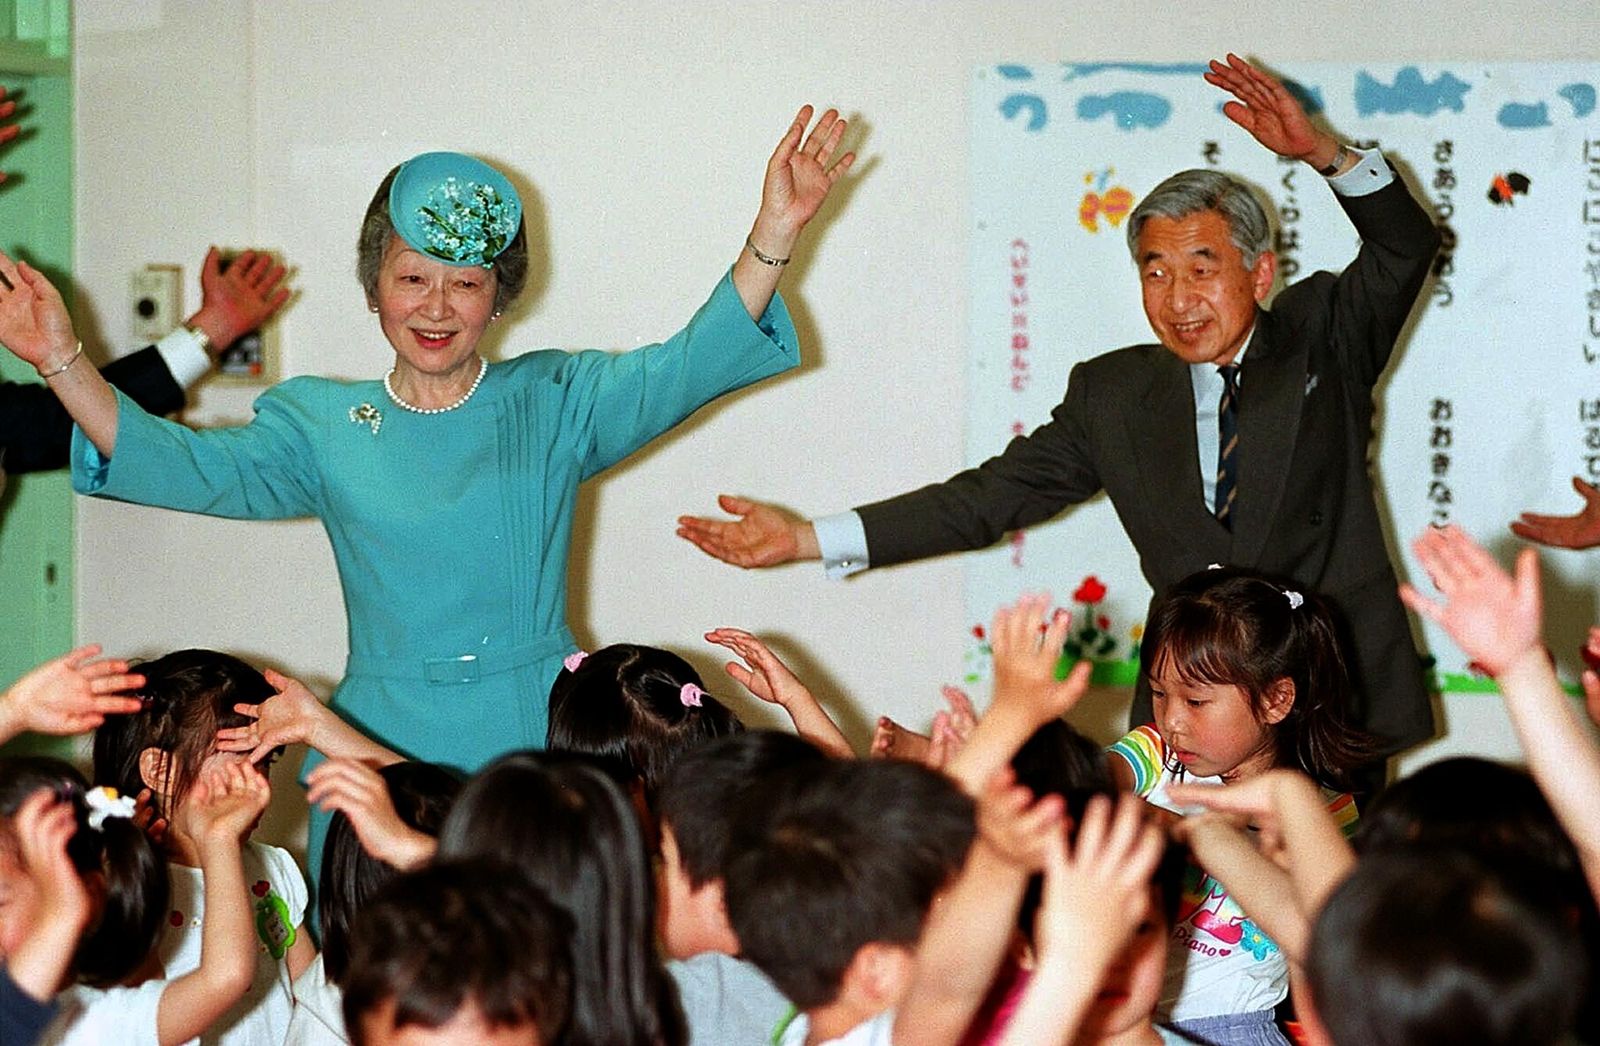 AFP-ราชวงศ์ญี่ปุ่น-จักรพรรดิอะกิฮิโตะ-จักรพรรดินีมิชิโกะร้องเพลงและเต้นรำร่วมกับเด็กๆ ในโรงเรียน.jpg